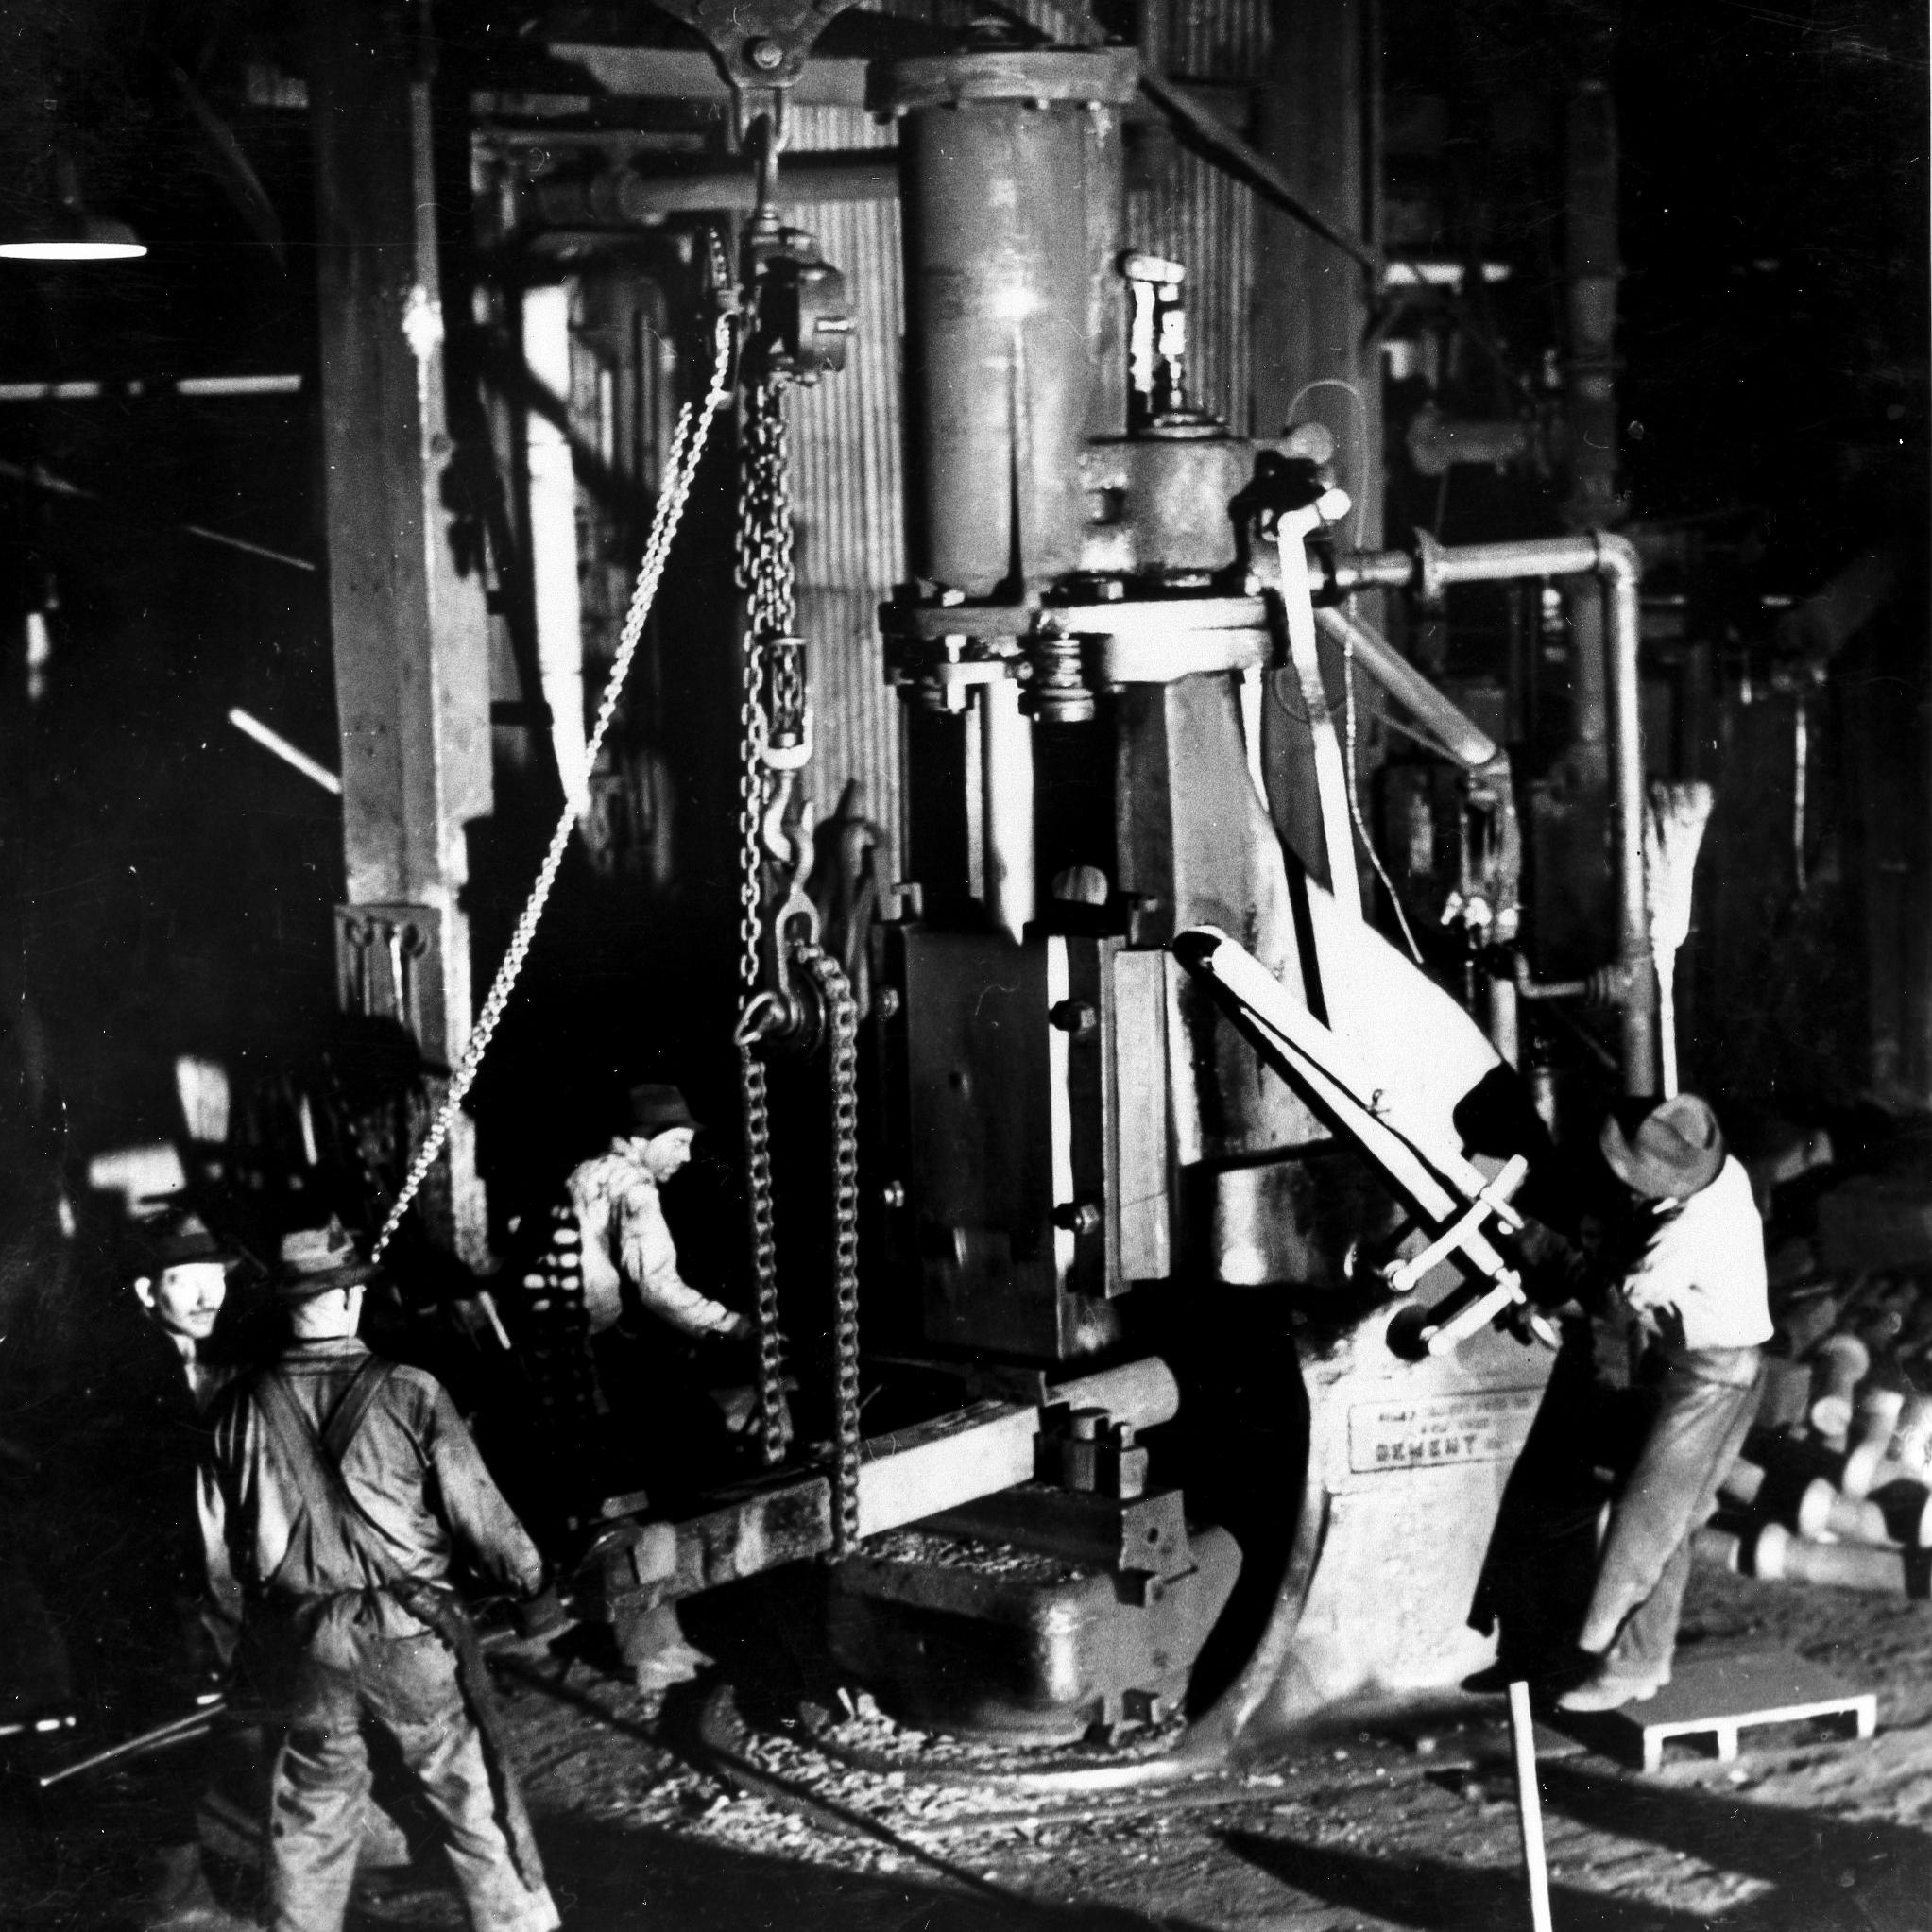 Inside the machine shop, ca 1940.